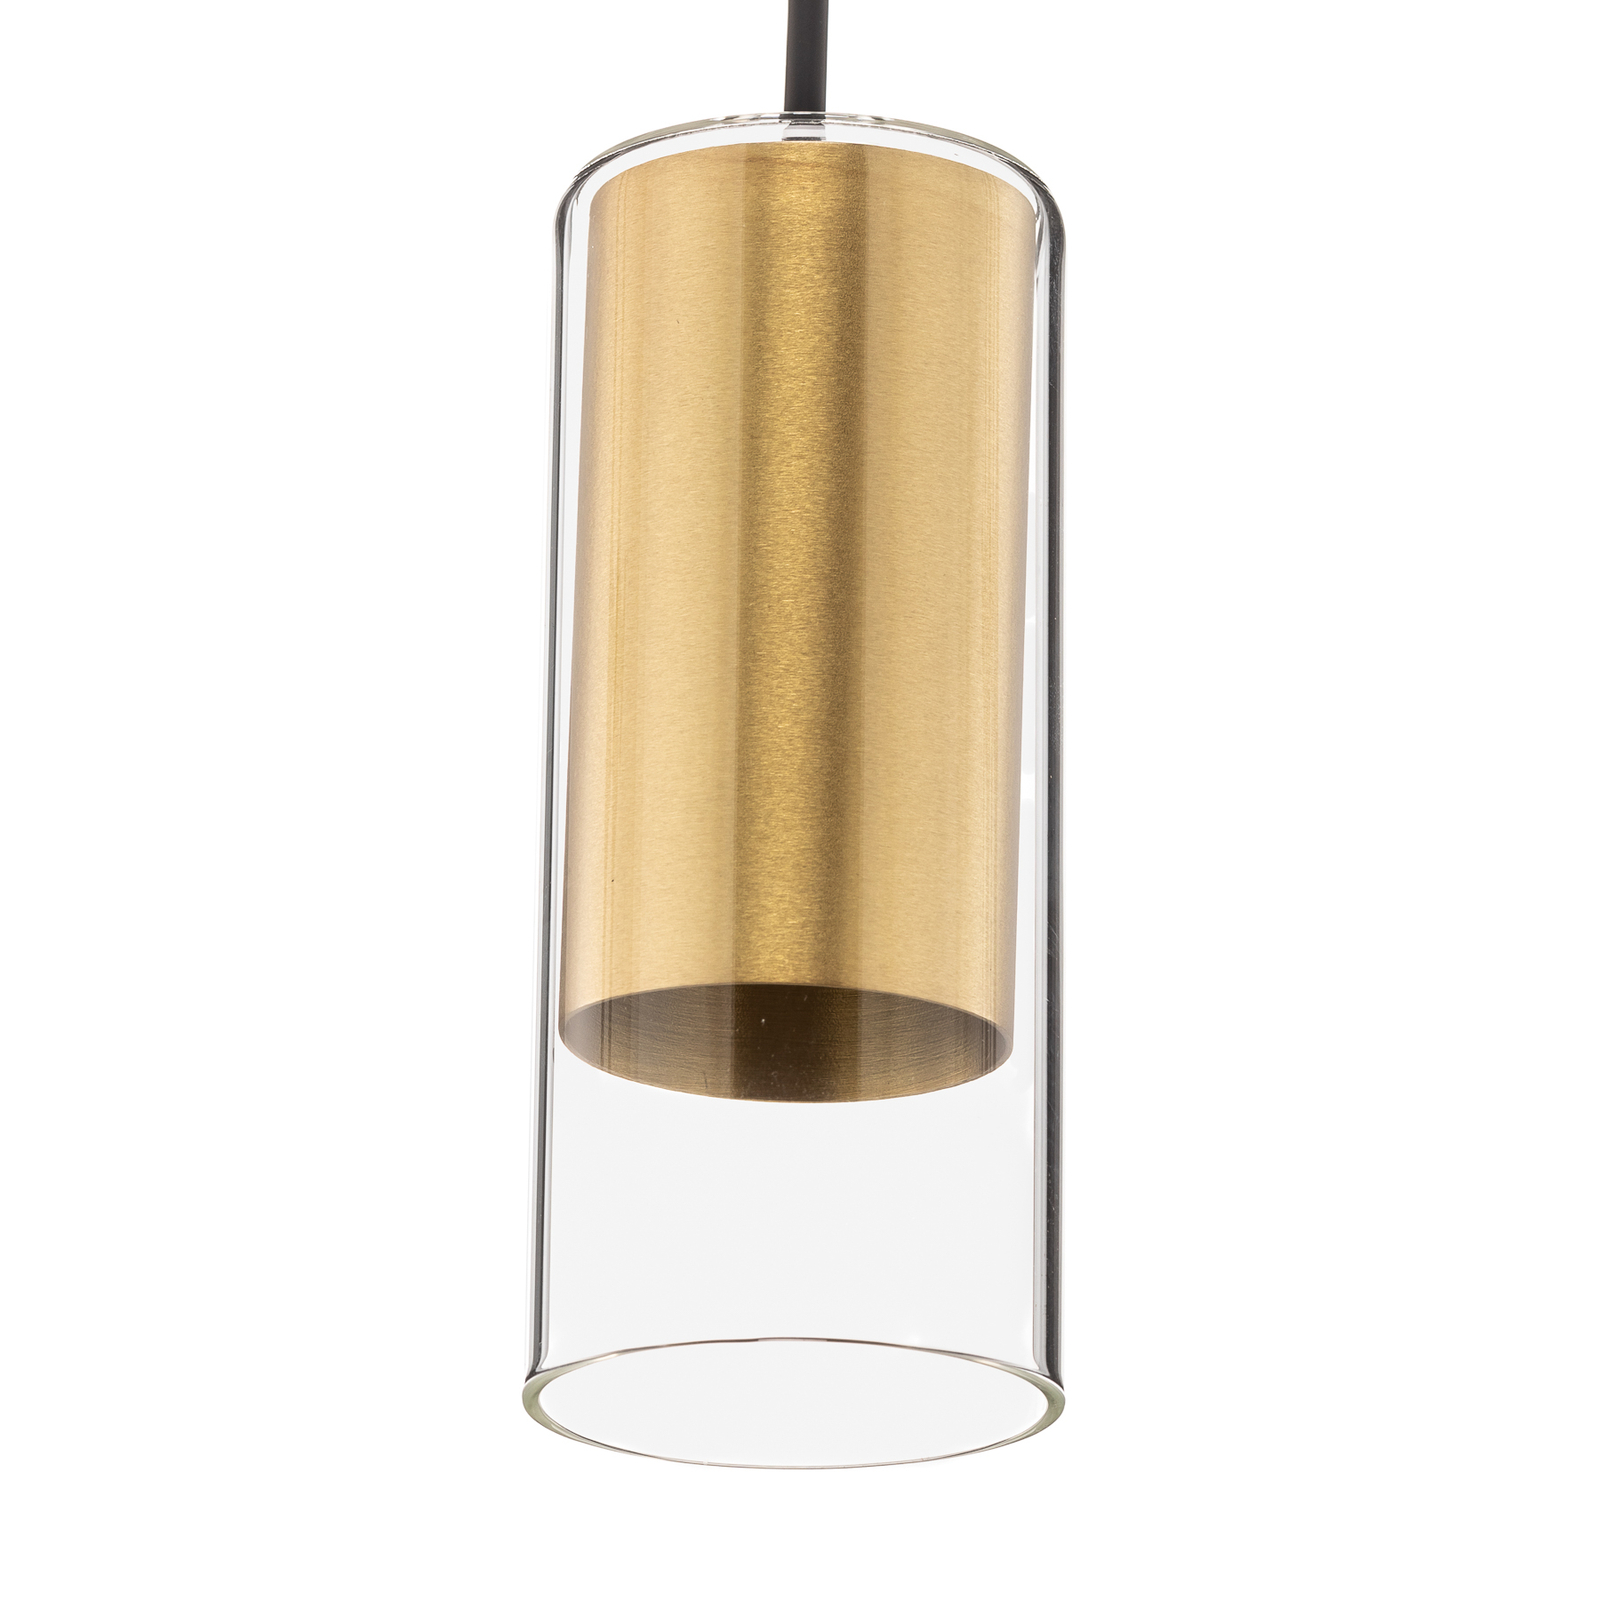 Viseće svjetlo u obliku cilindra, prozirno/mjed, visina 15 cm